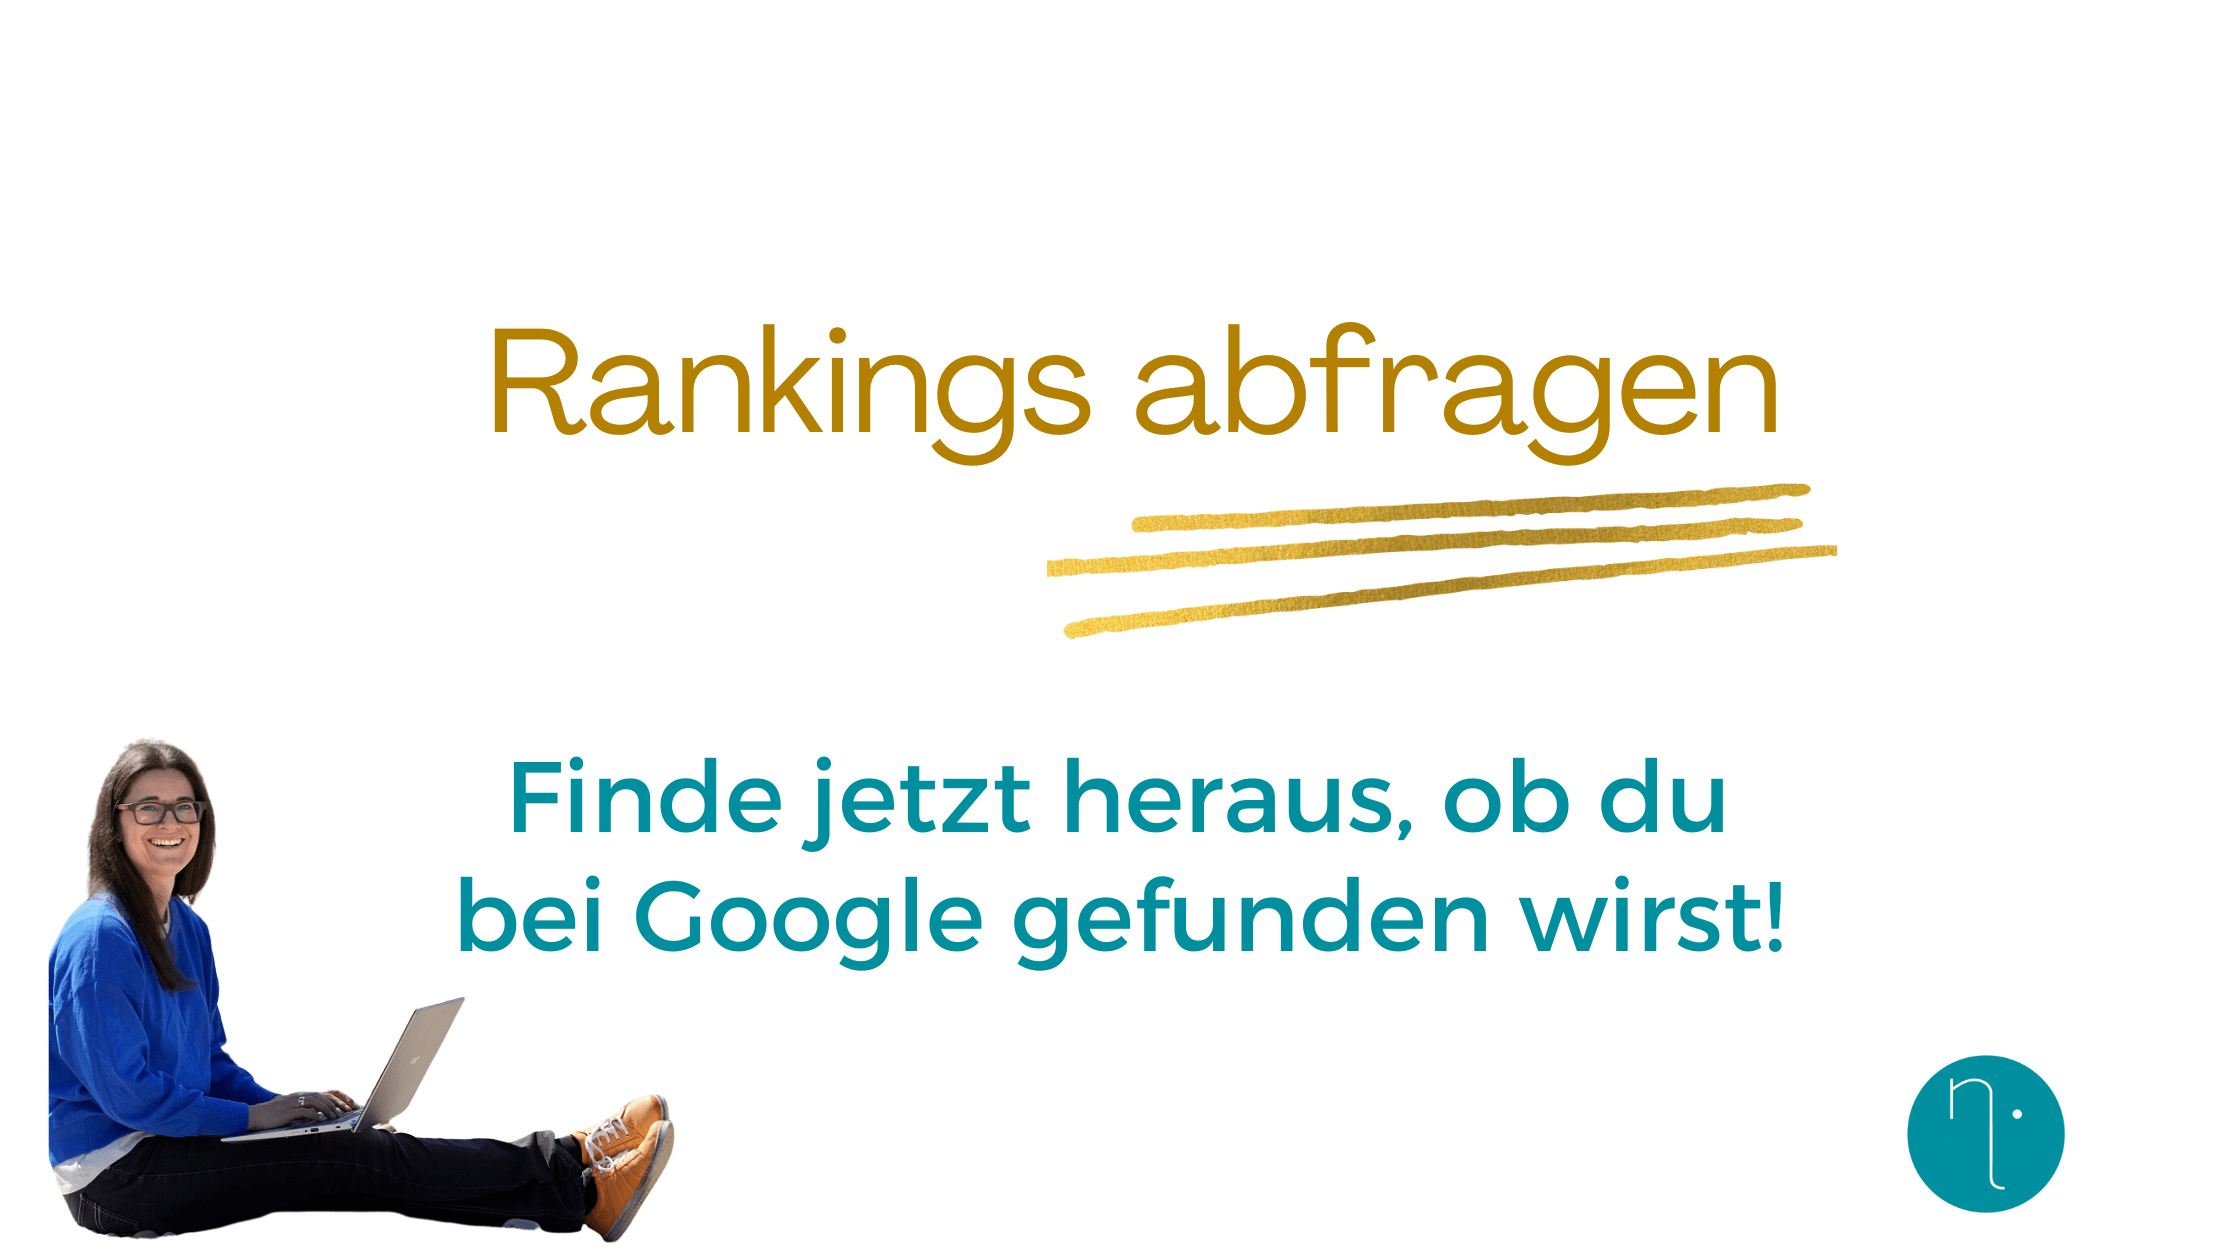 Google Ranking abfragen - so einfach geht es